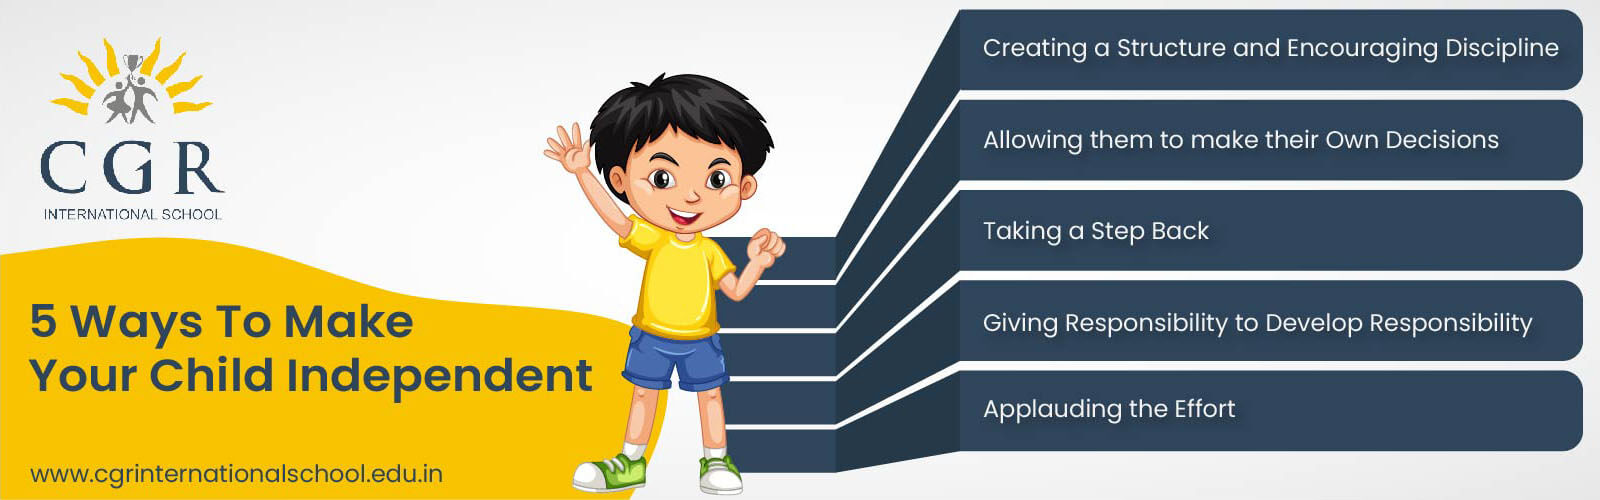 5 Ways To Make Your Child Independent - CGR International School - Best School in Madhapur / Hyderabad